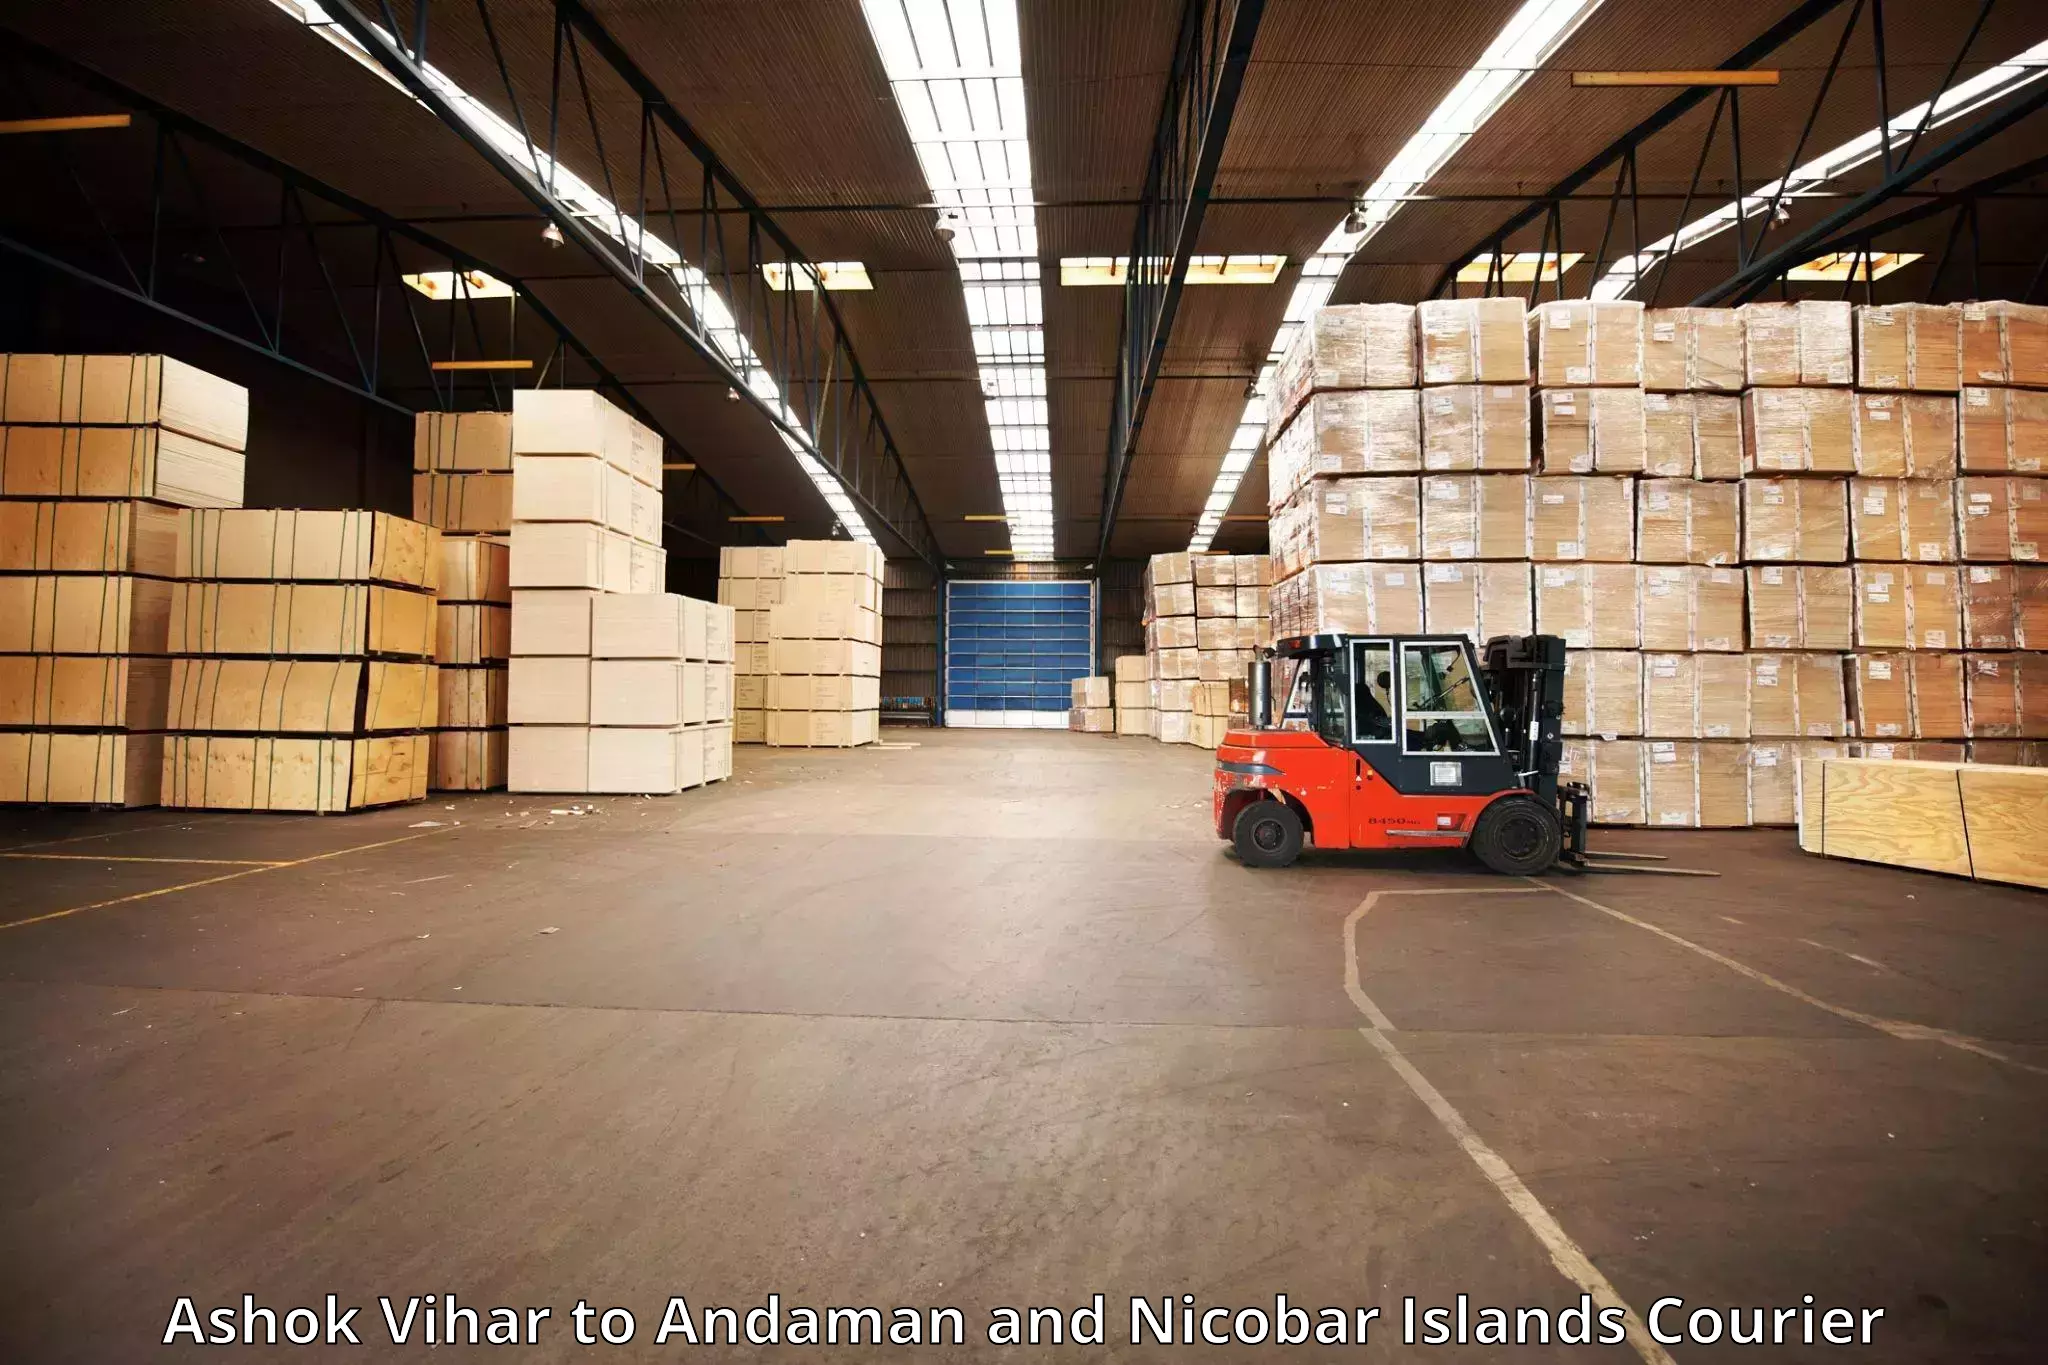 Luggage delivery providers Ashok Vihar to Andaman and Nicobar Islands